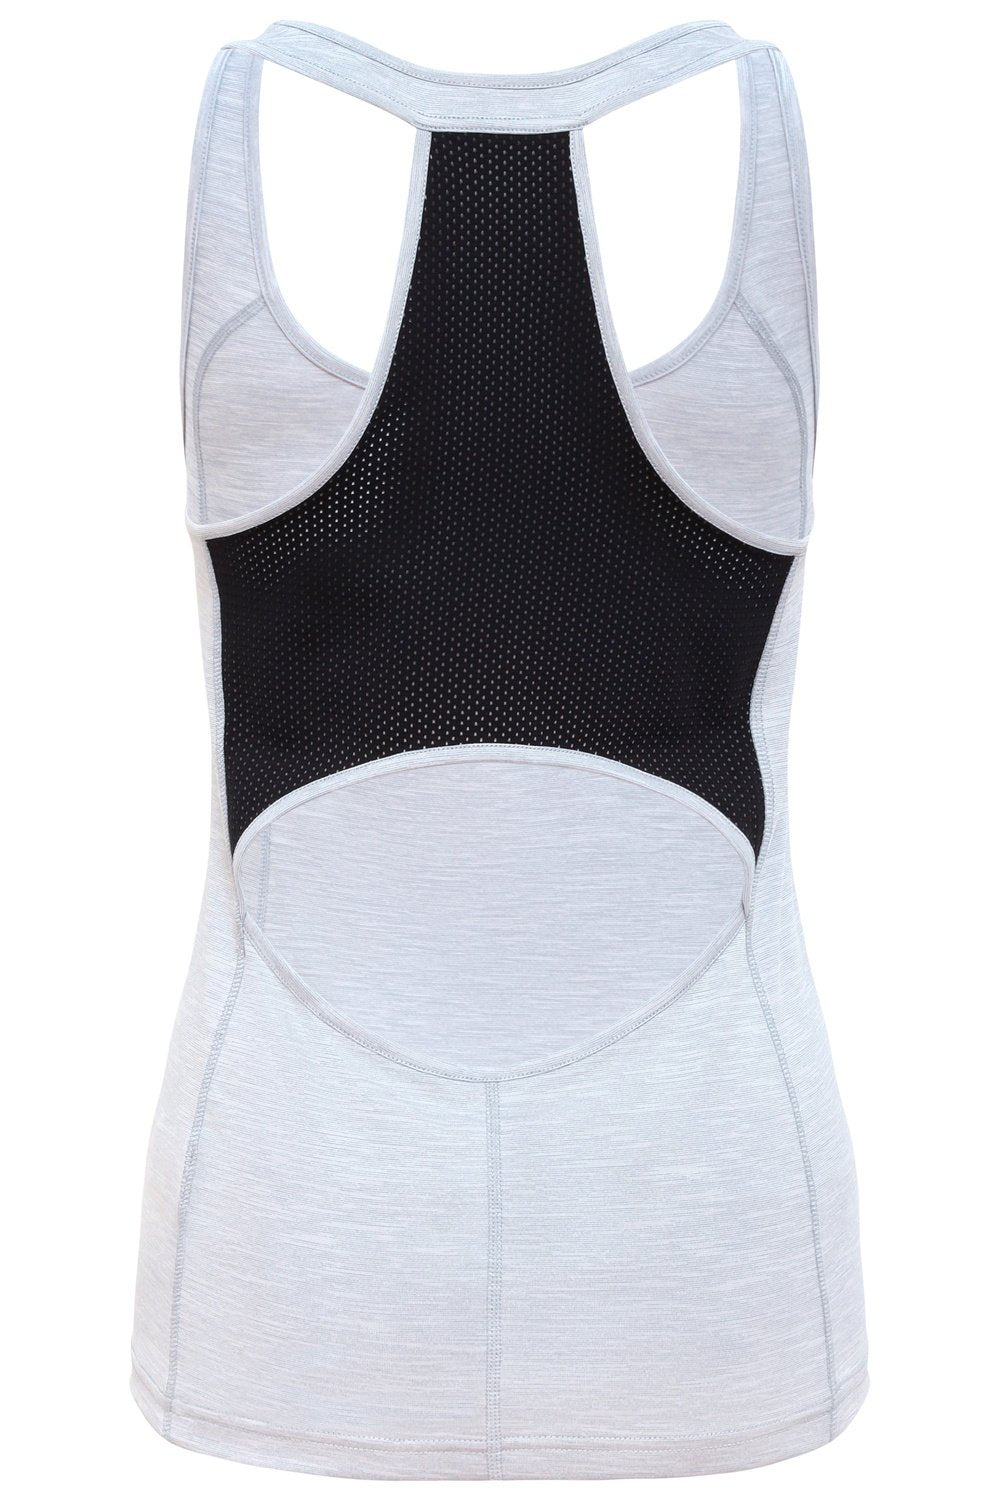 Sundried Tour Noir Women's Vest Vest Activewear